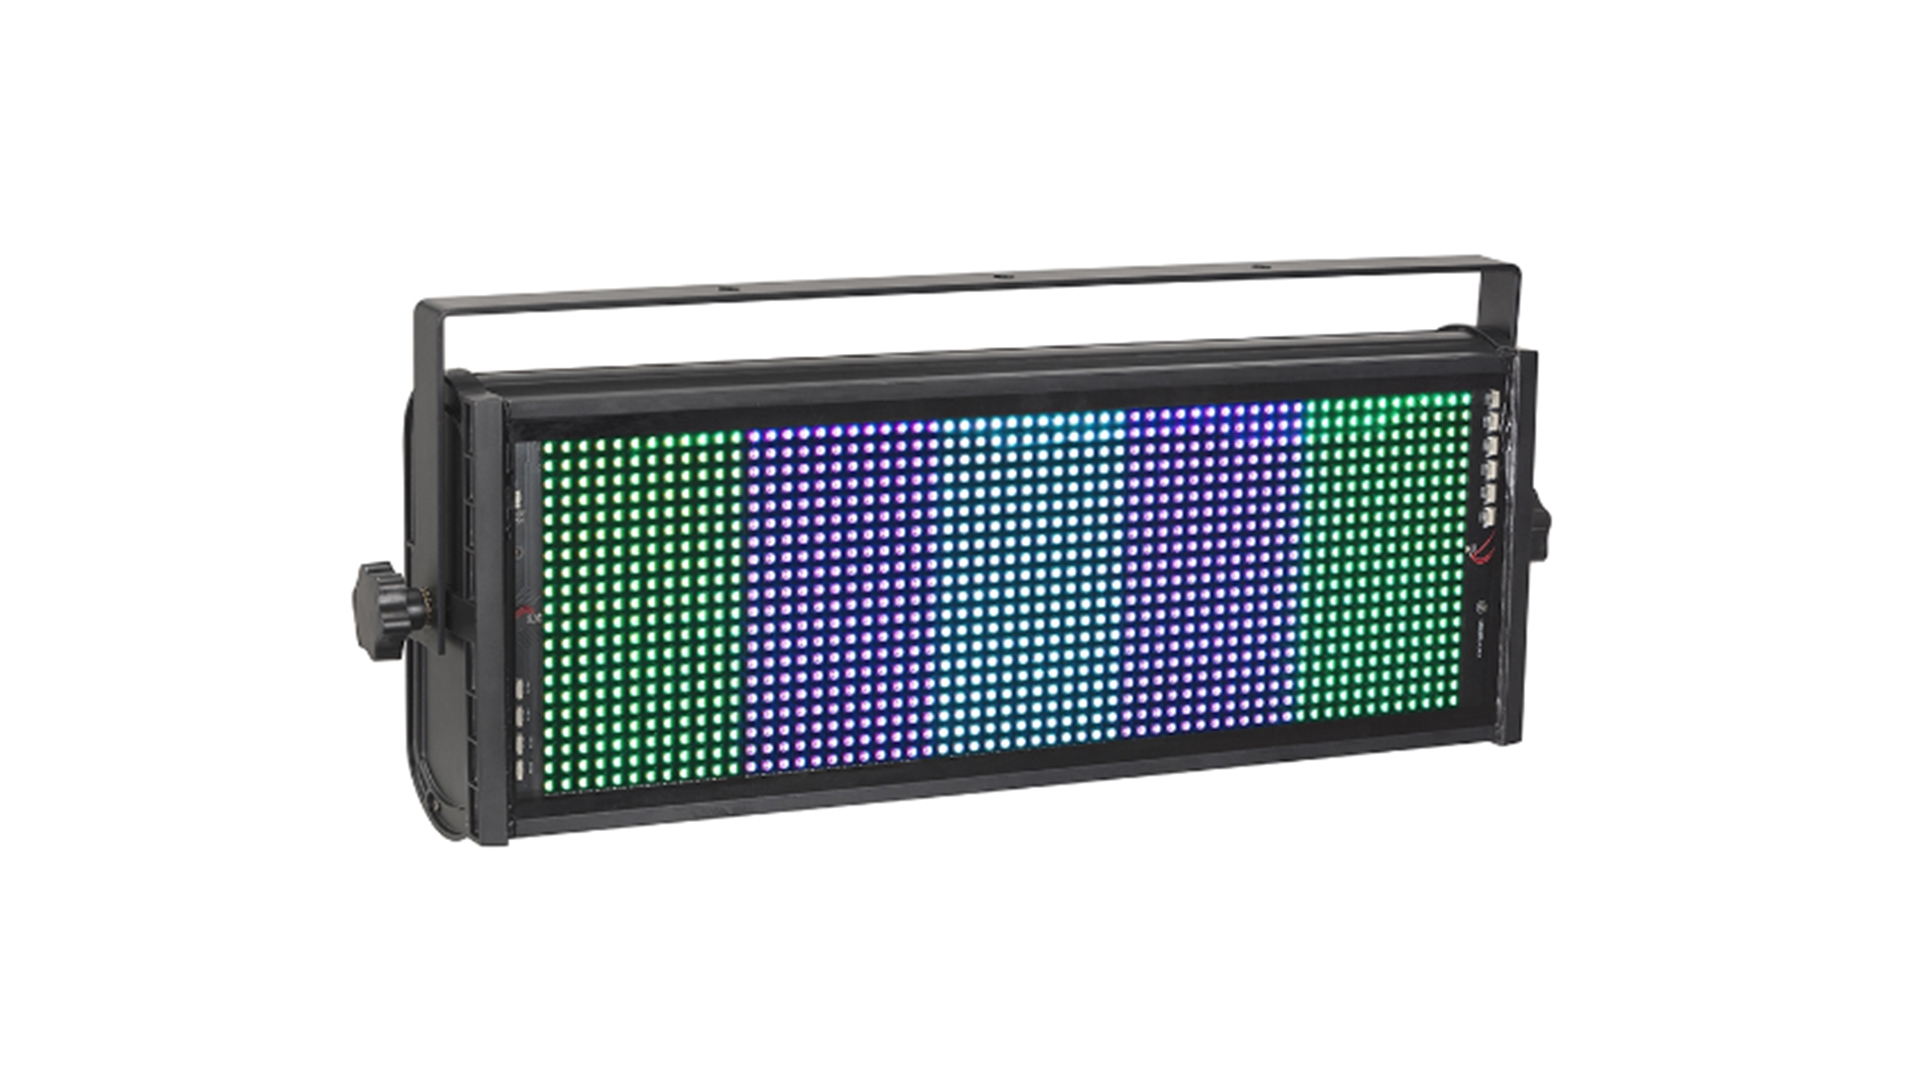 Luz estroboscópica LED profesional para exteriores YR-DW1200Q de Yellow River